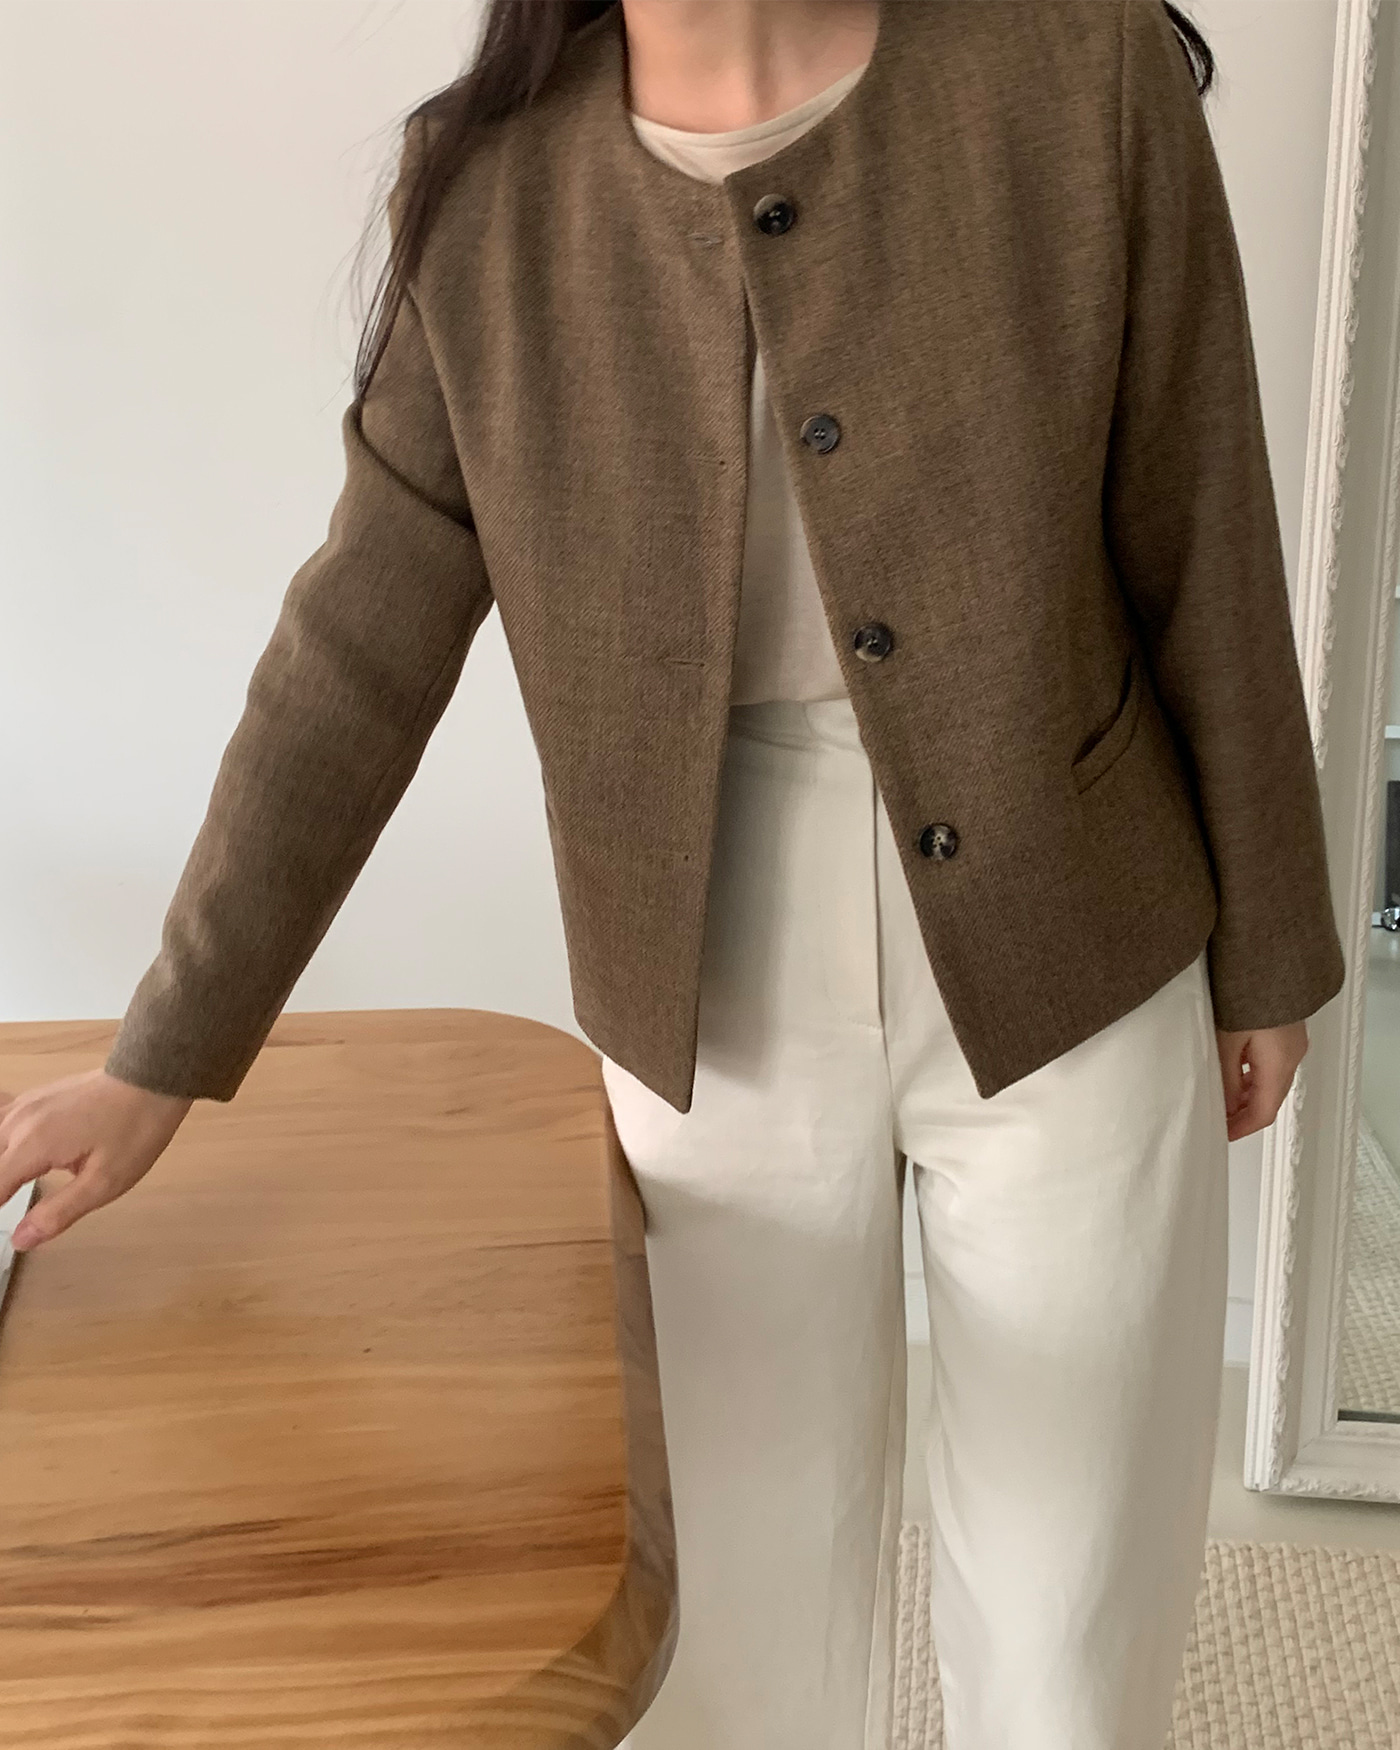 Round tweed jacket (brown)